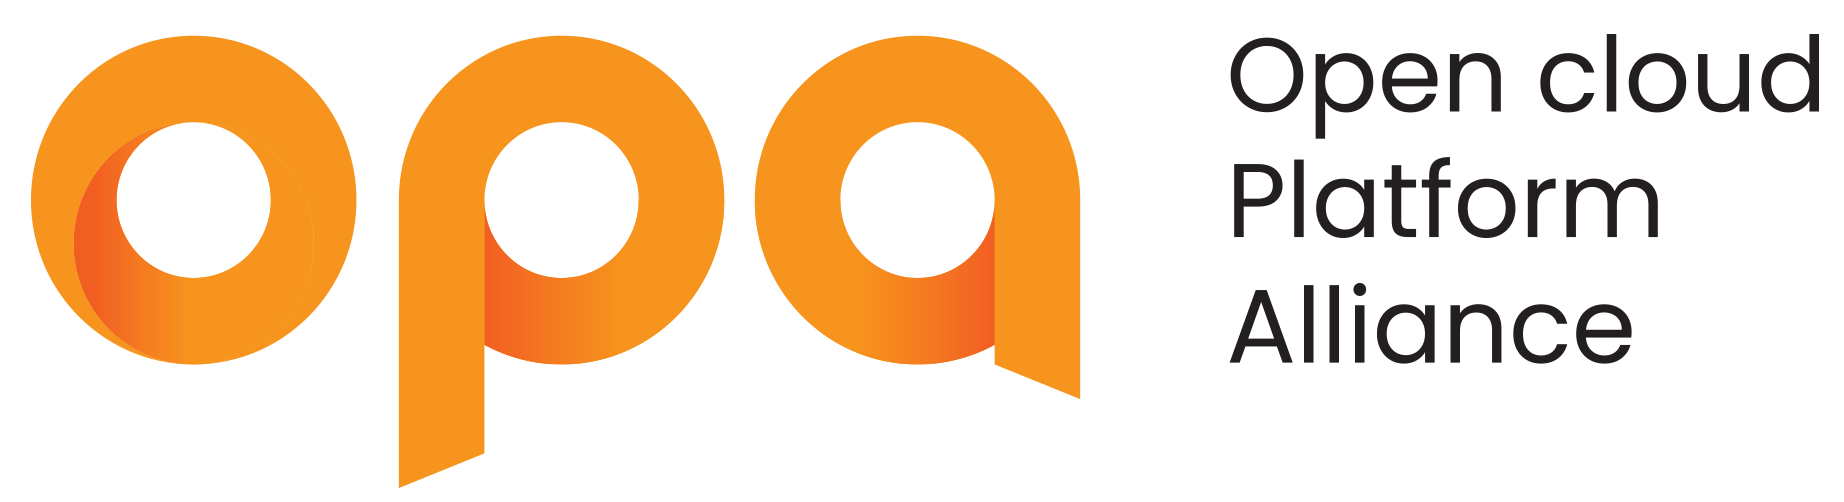 OPA(Open cloud Platform Alliance) 로고